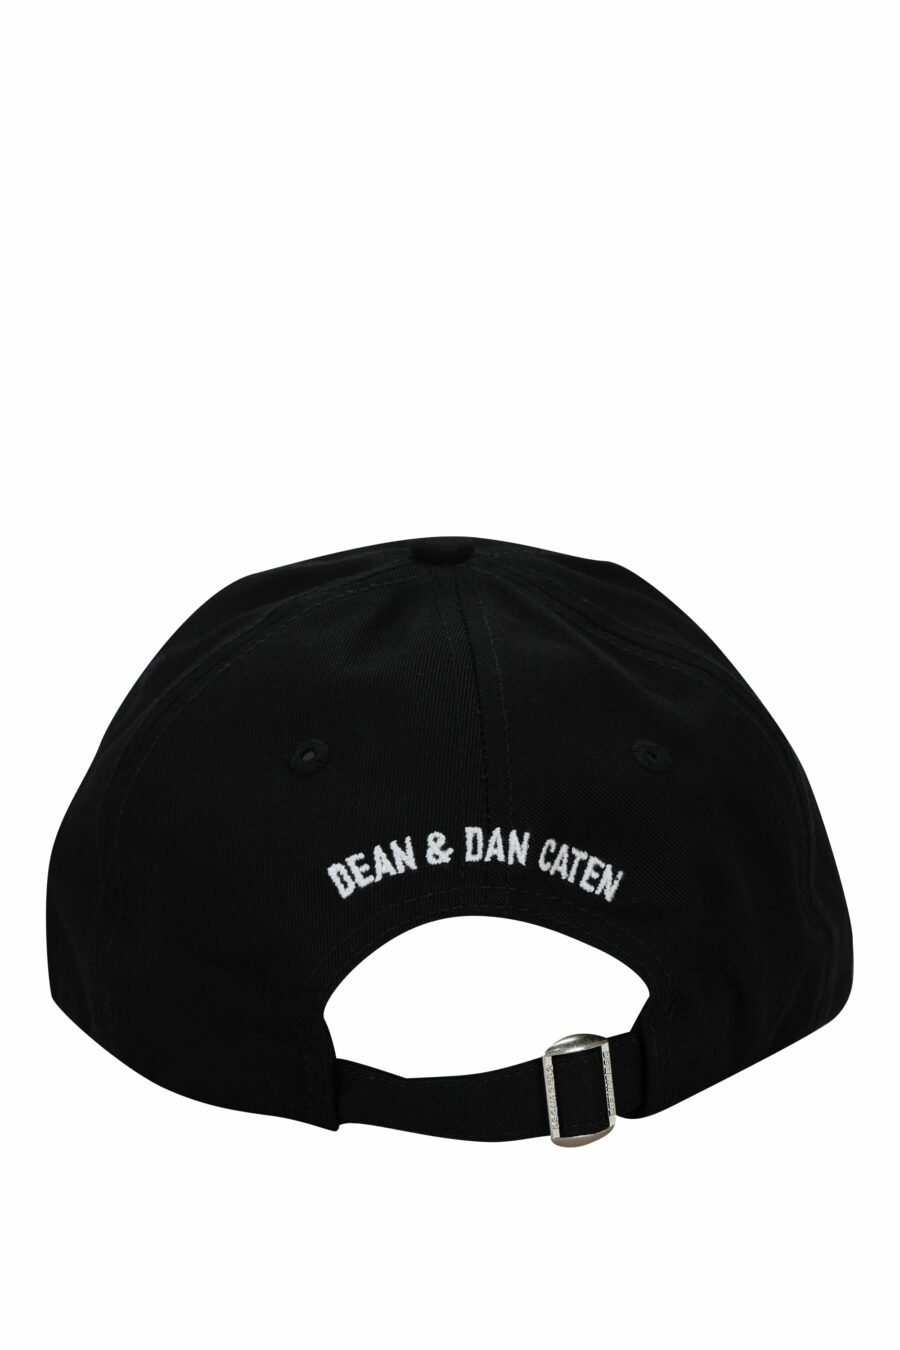 Gorra negra con logo blanco y detrás "dean and dan caten" - 8055777214503 1